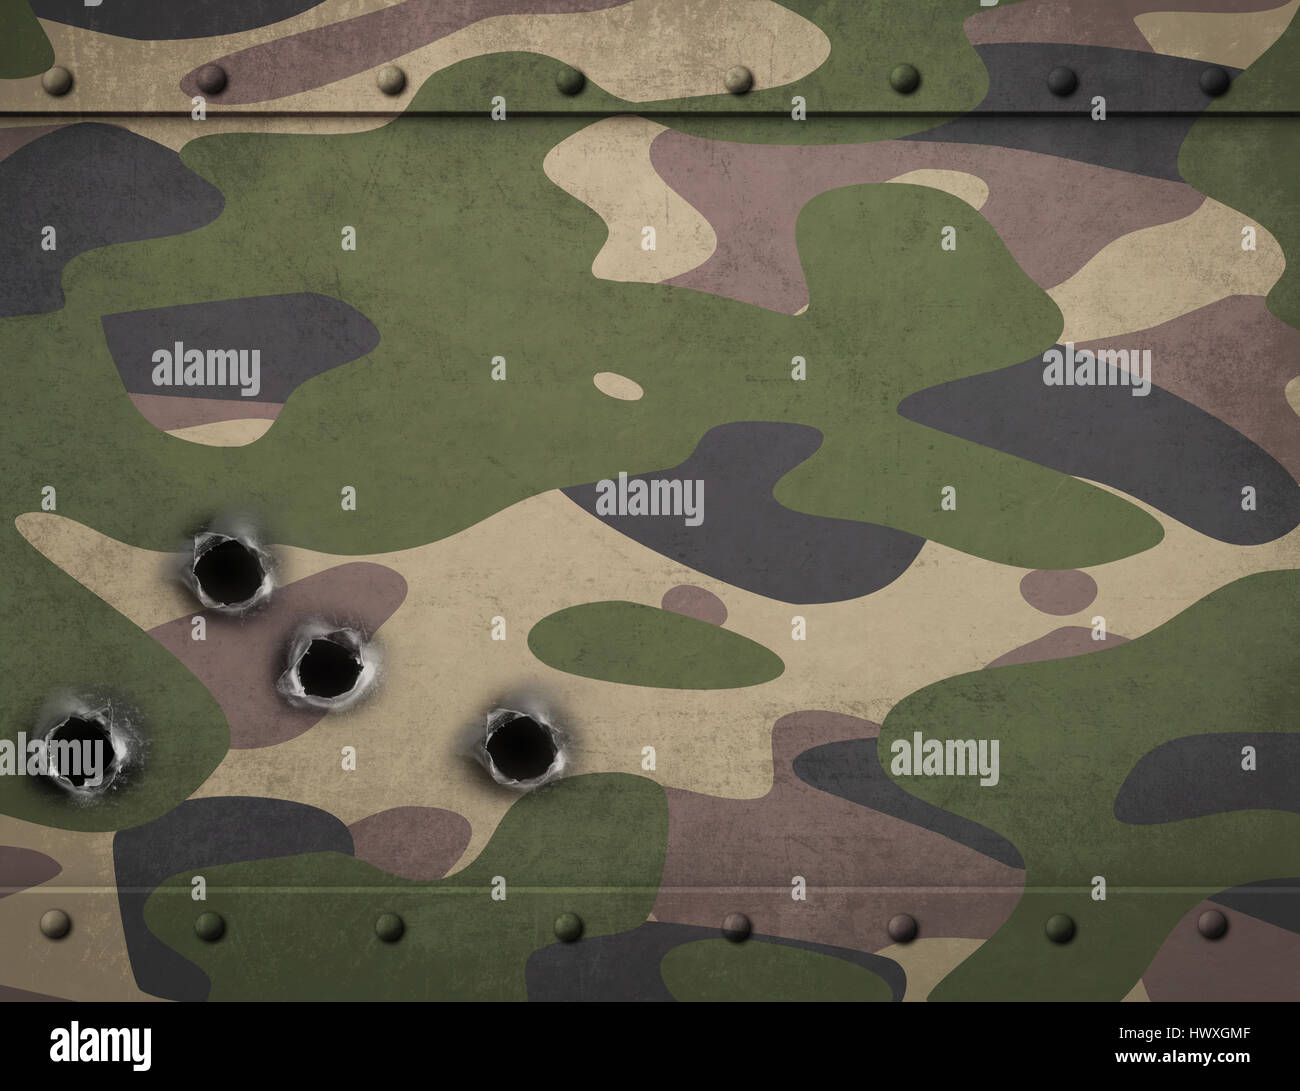 Army camouflage armatura metallica con fori di proiettile 3d illustrazione Foto Stock